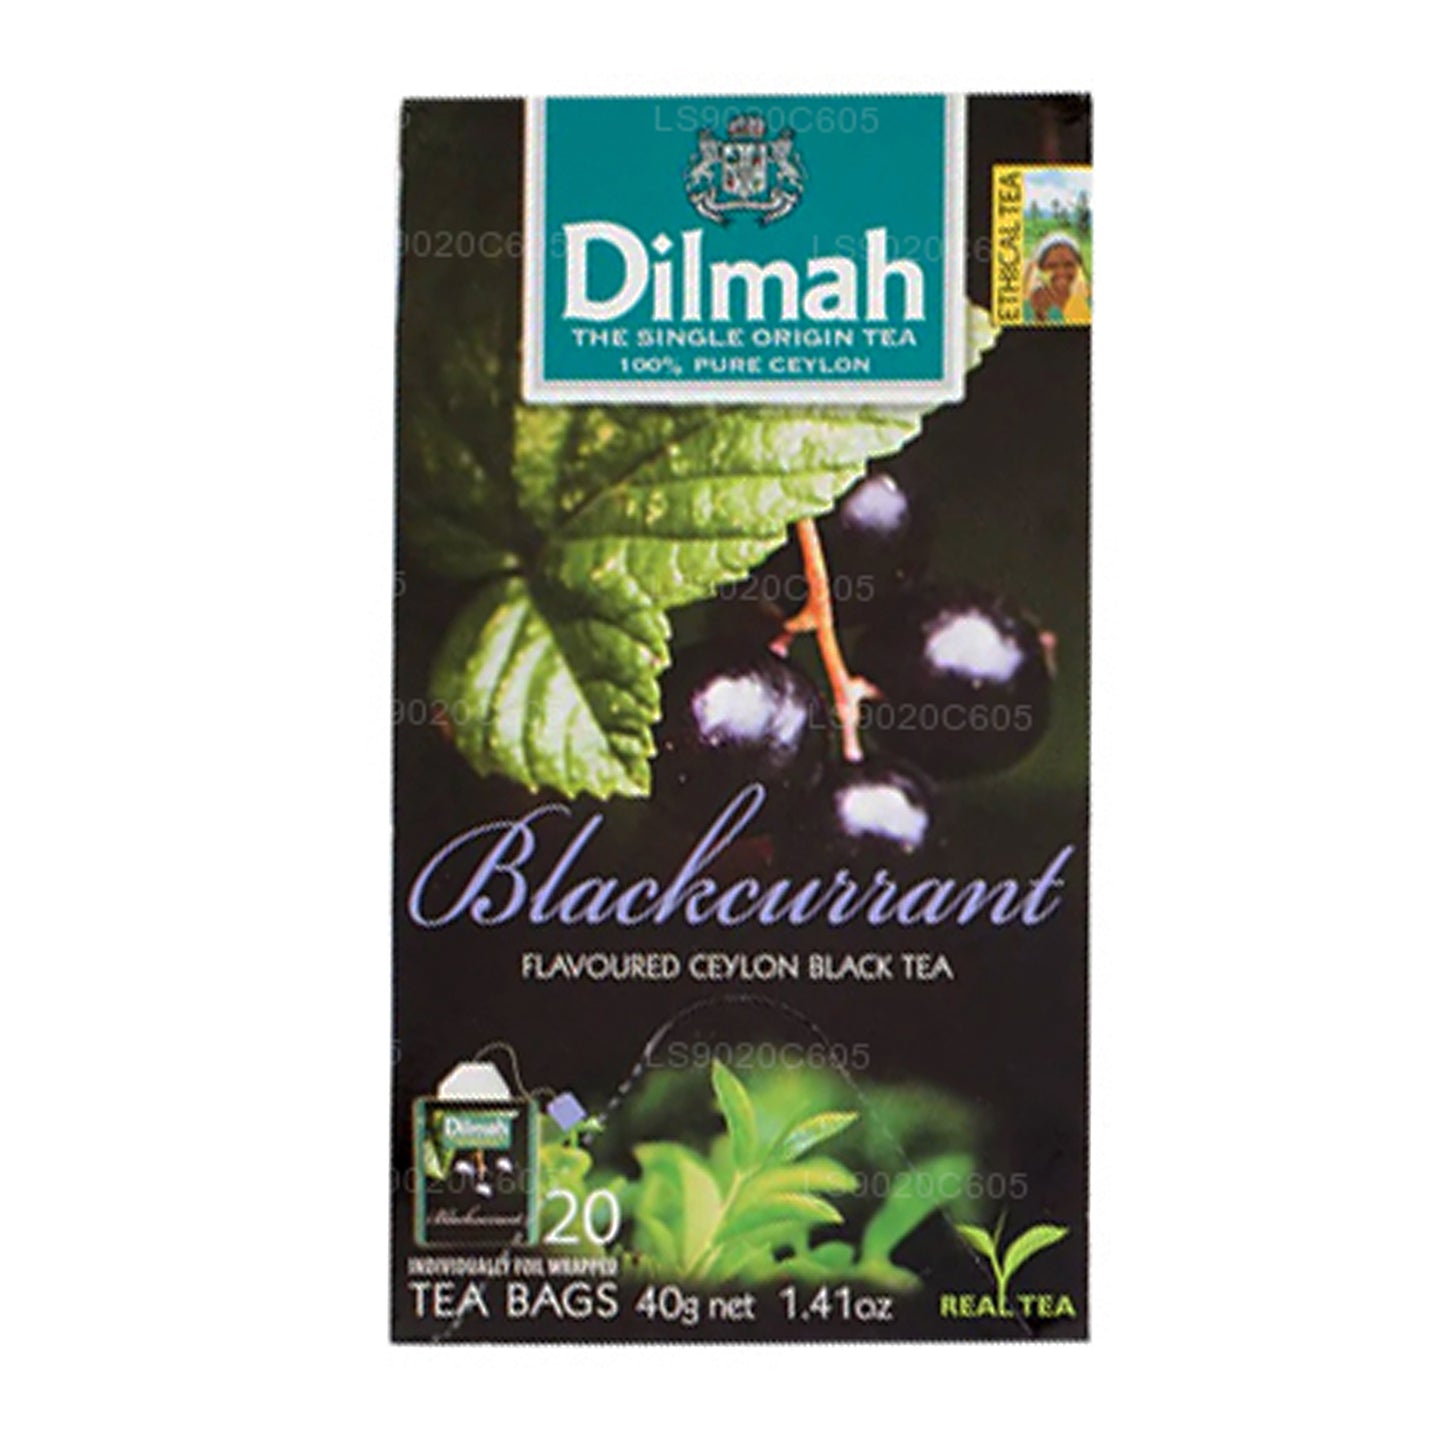 Чай Dilmah со вкусом черной смородины (40 г) 20 пакетиков